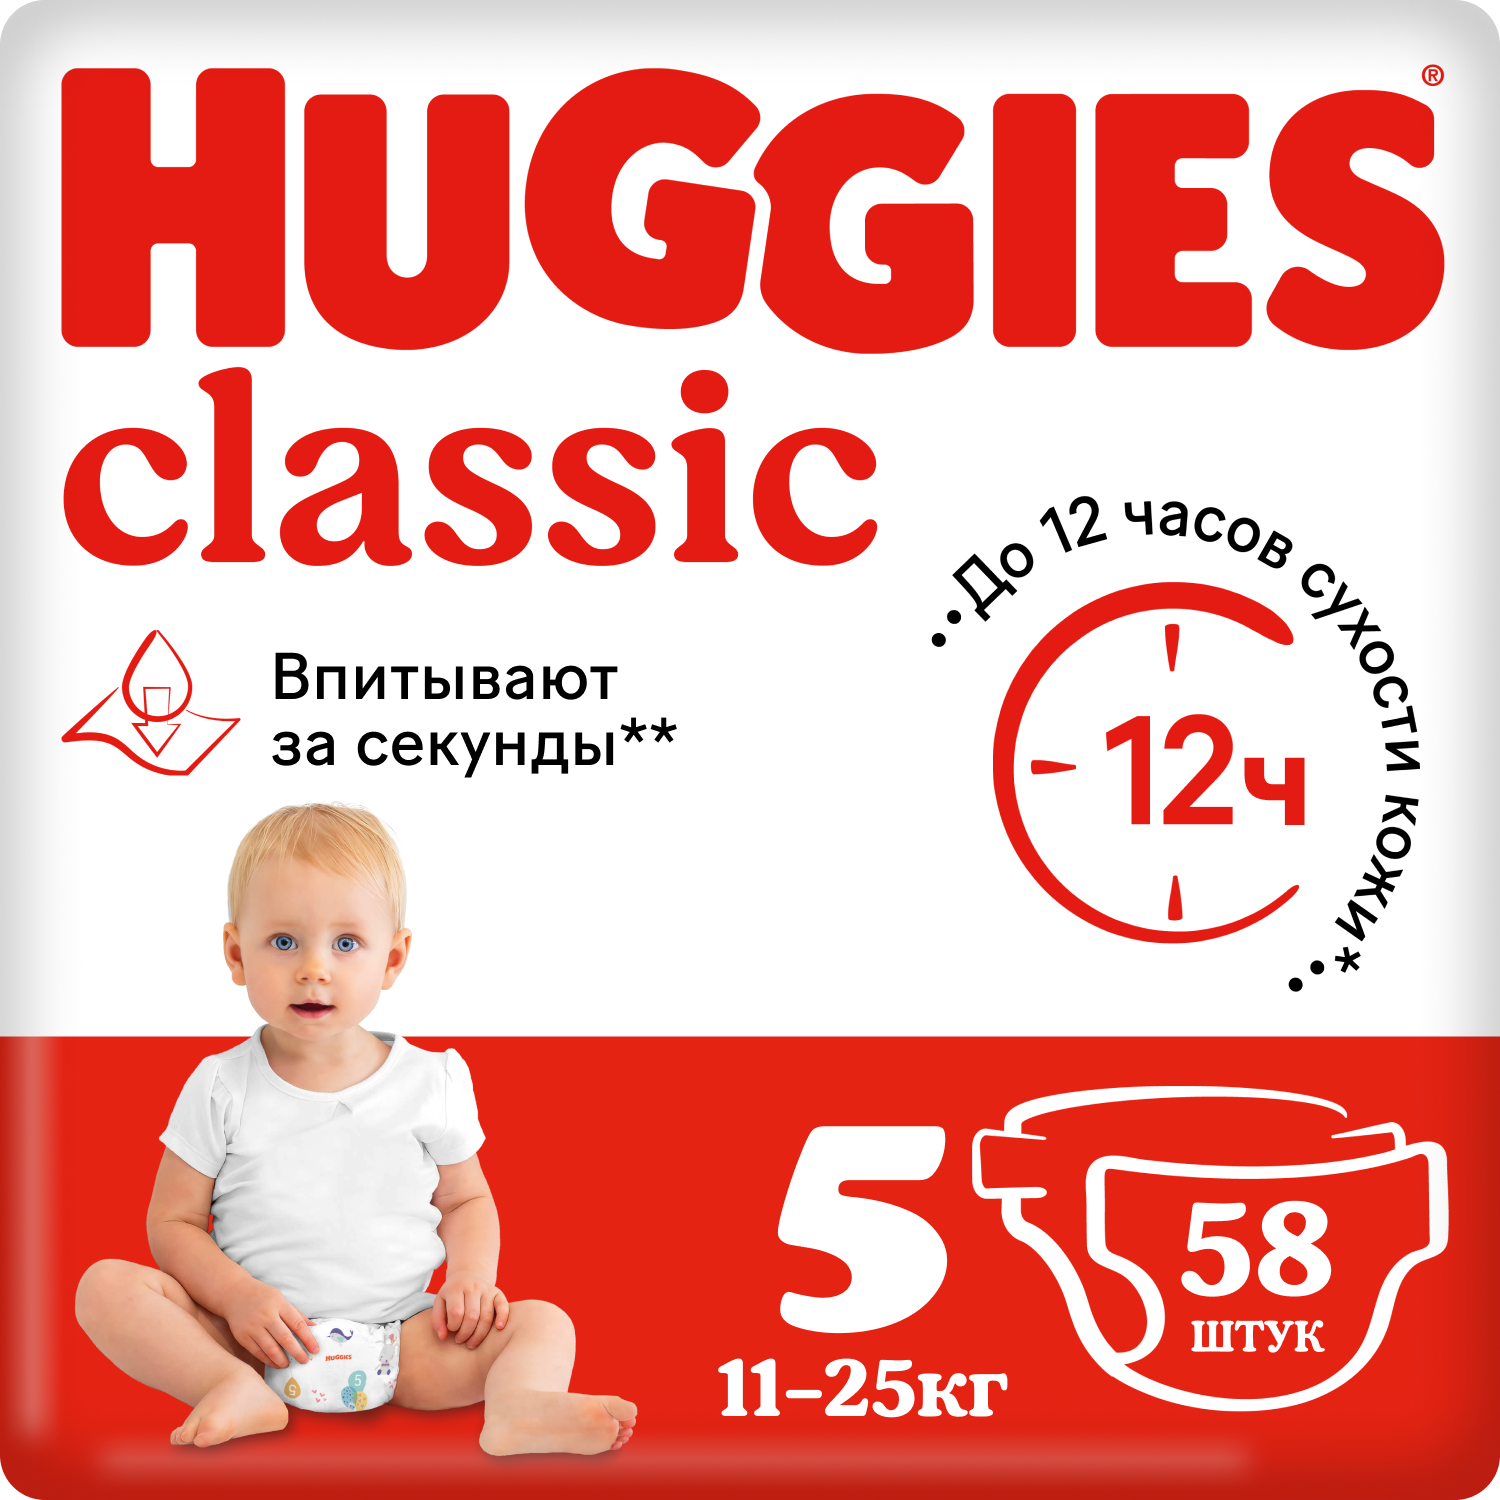 Подгузники Huggies Classic 5 (11-25 кг), 58 шт. подгузники huggies classic 5 11 25 кг 11 шт